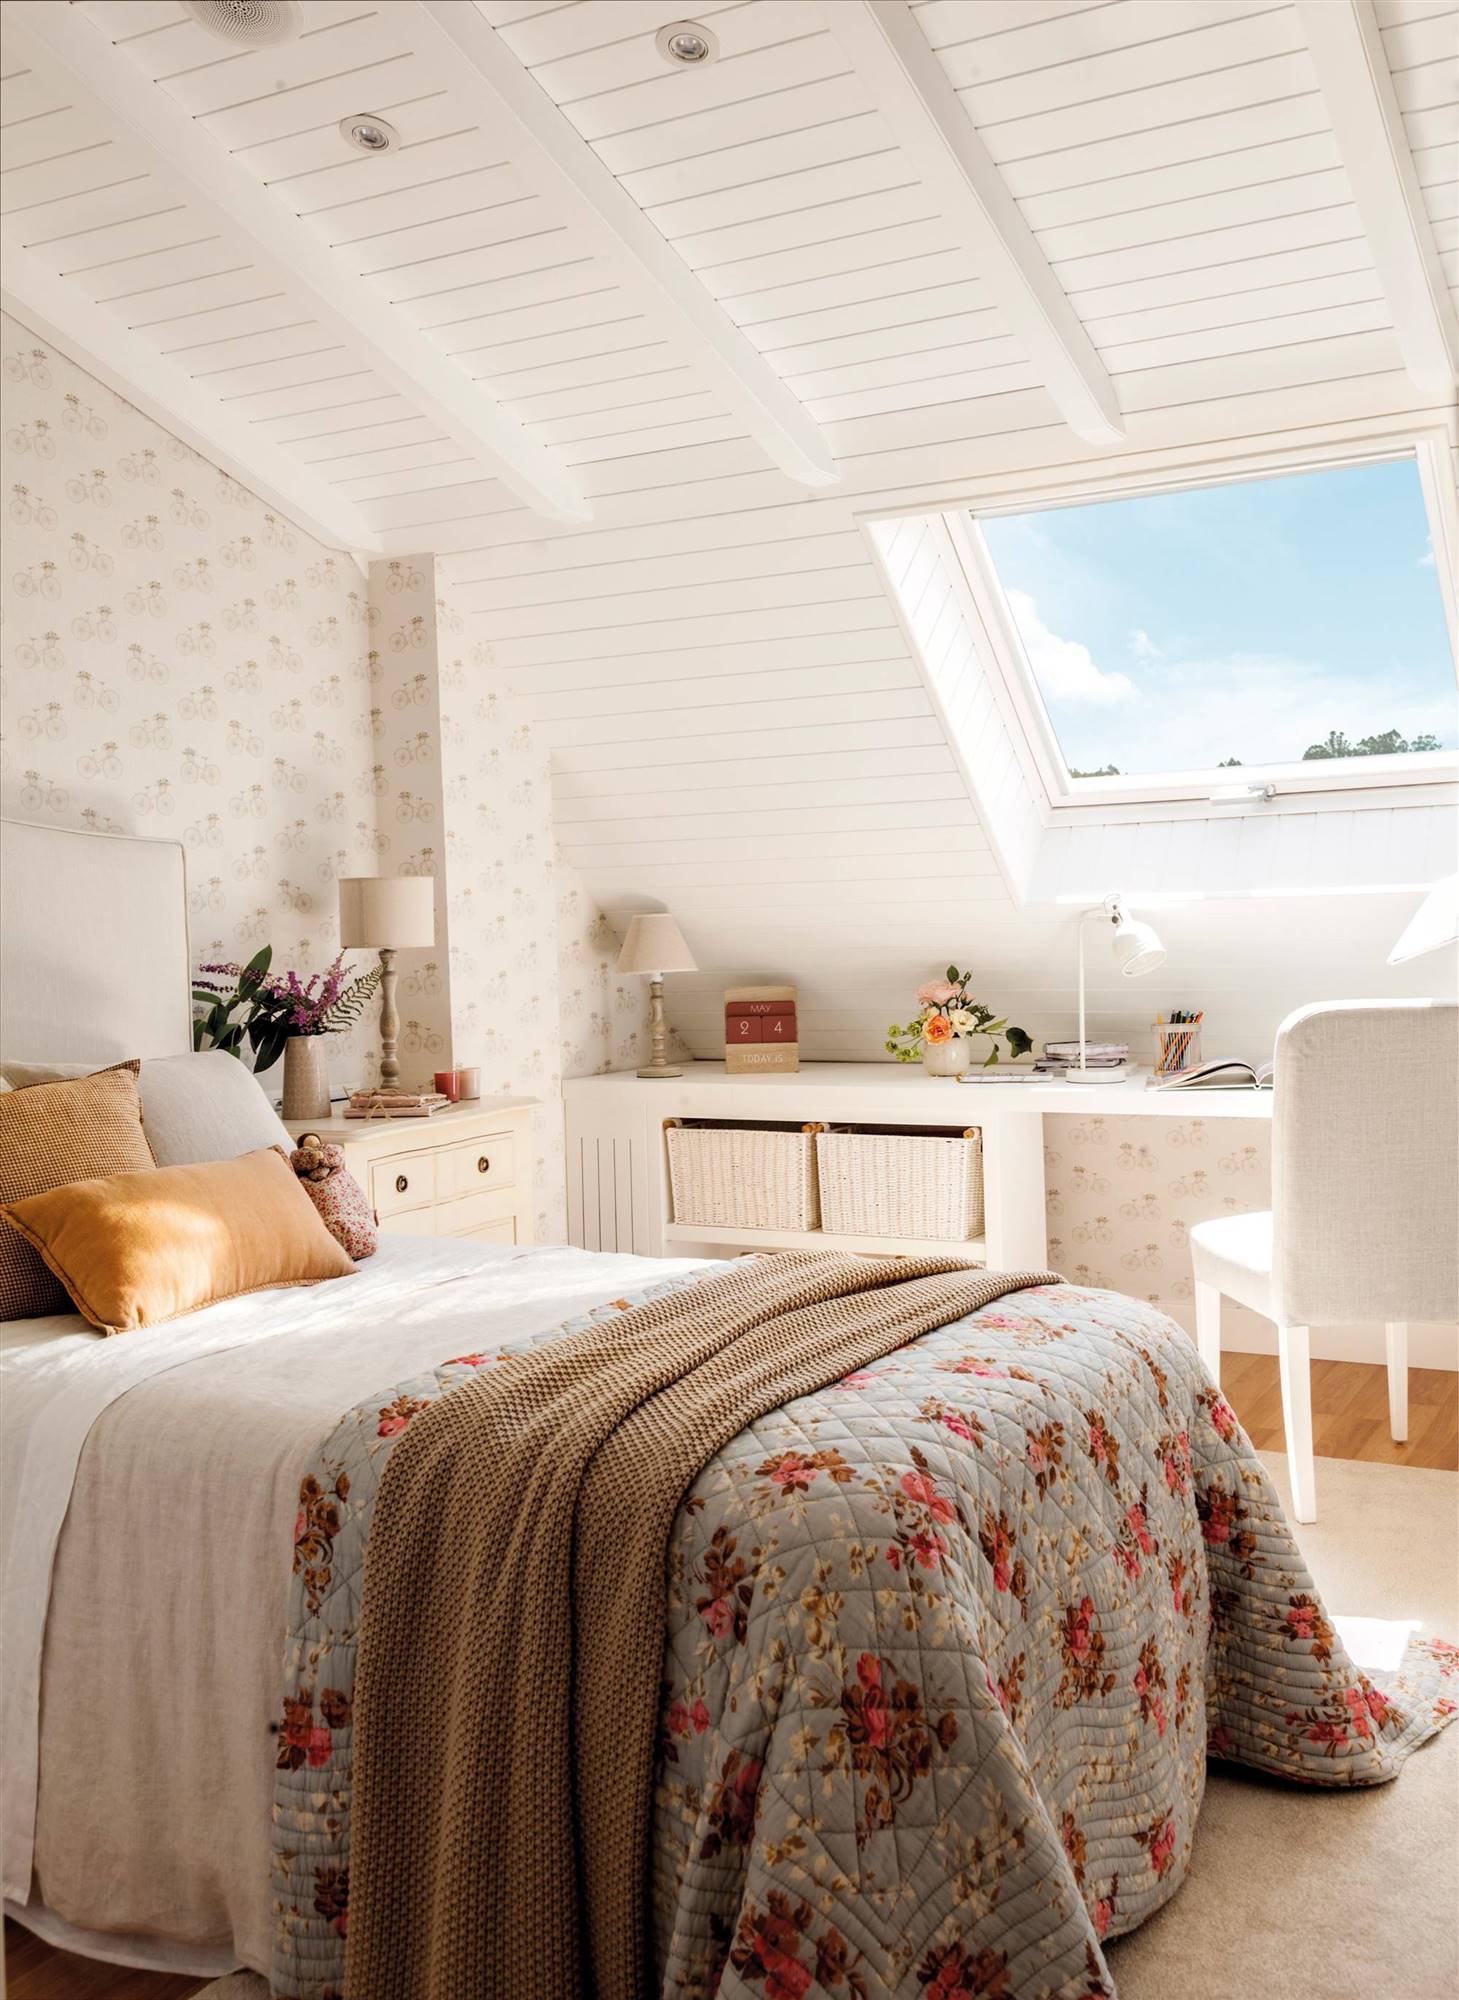 Dormitorio blanco con pared de cabecero revestido de papel pintado, escritorio bajo la ventana y boutí de flores.